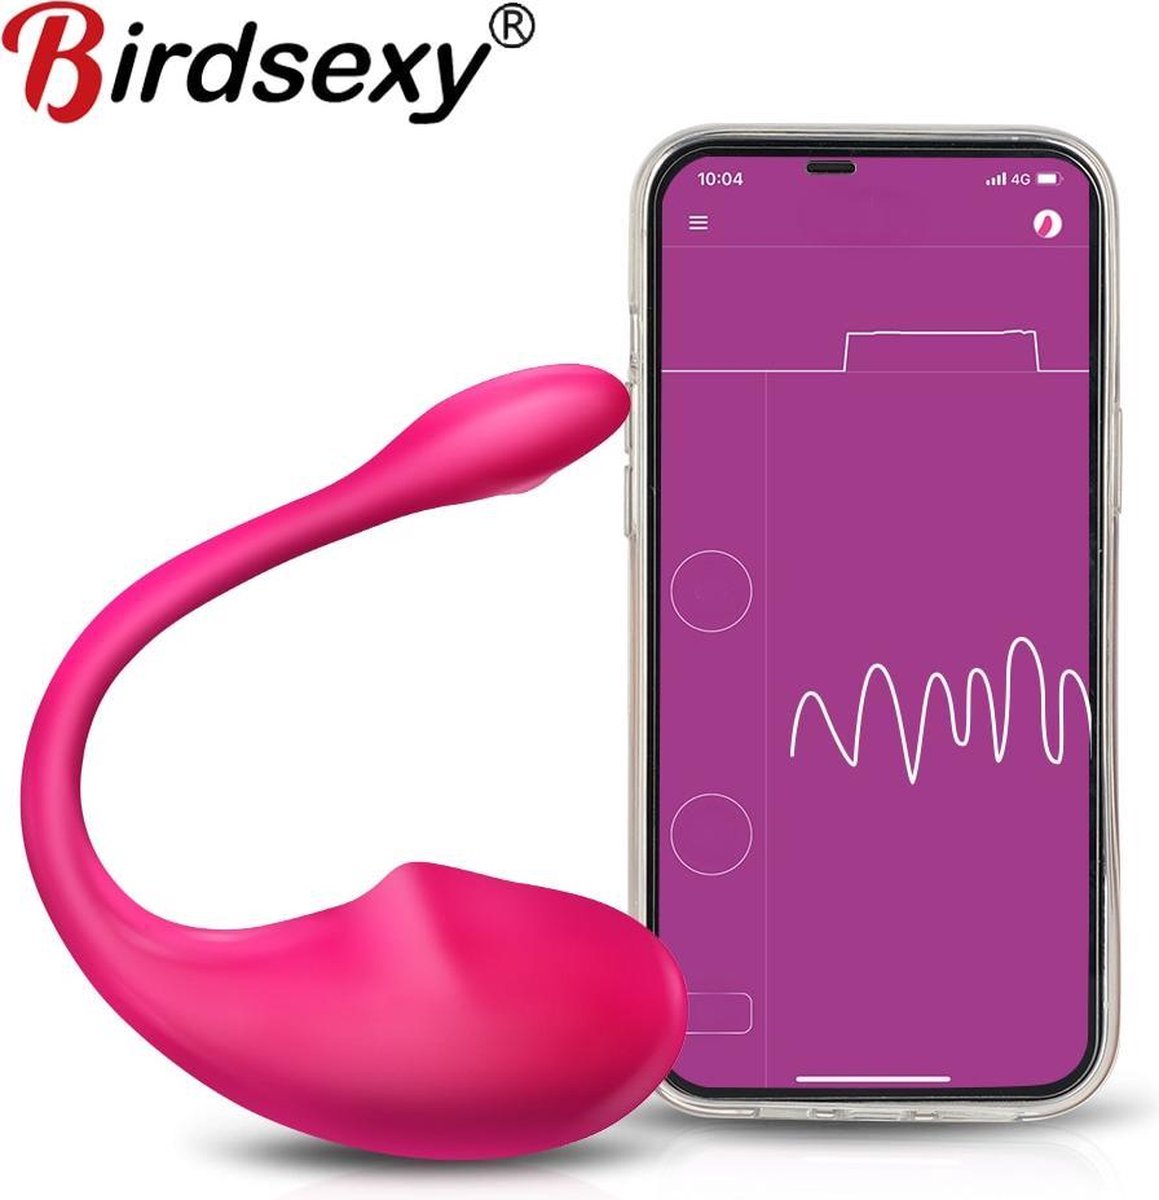 BirdSexy® Dildo Vibrator Voor Vrouwen - Seks Speeltje Voor Koppels - Met App